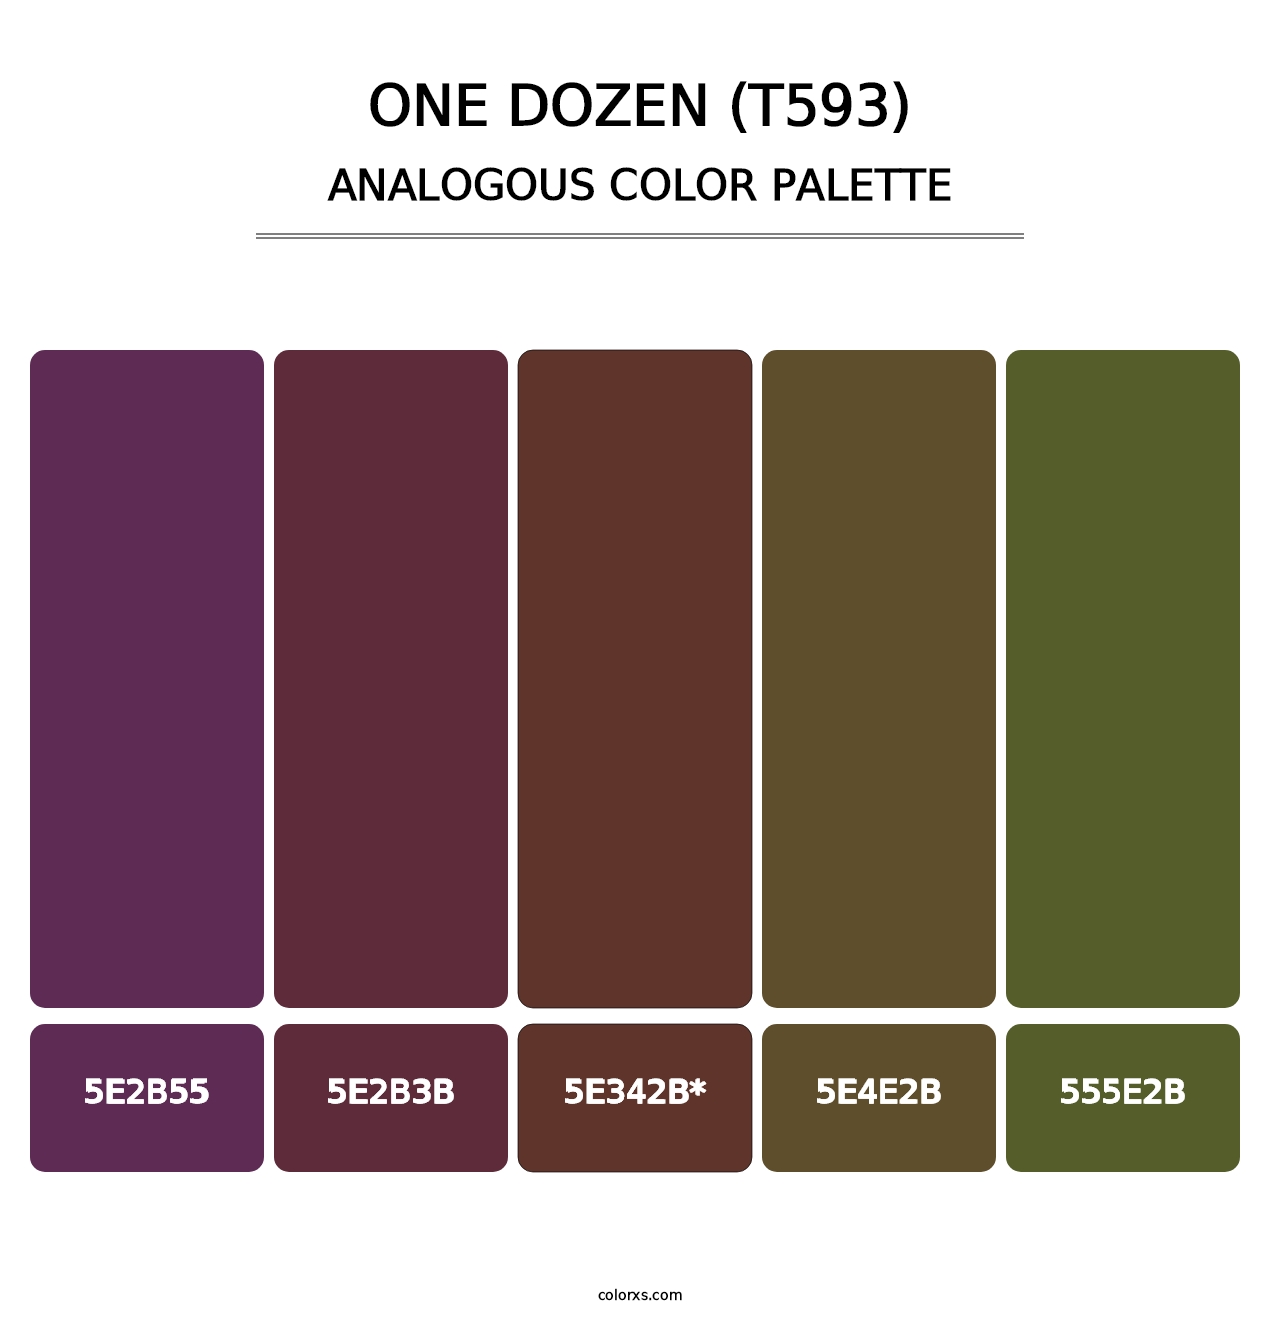 One Dozen (T593) - Analogous Color Palette